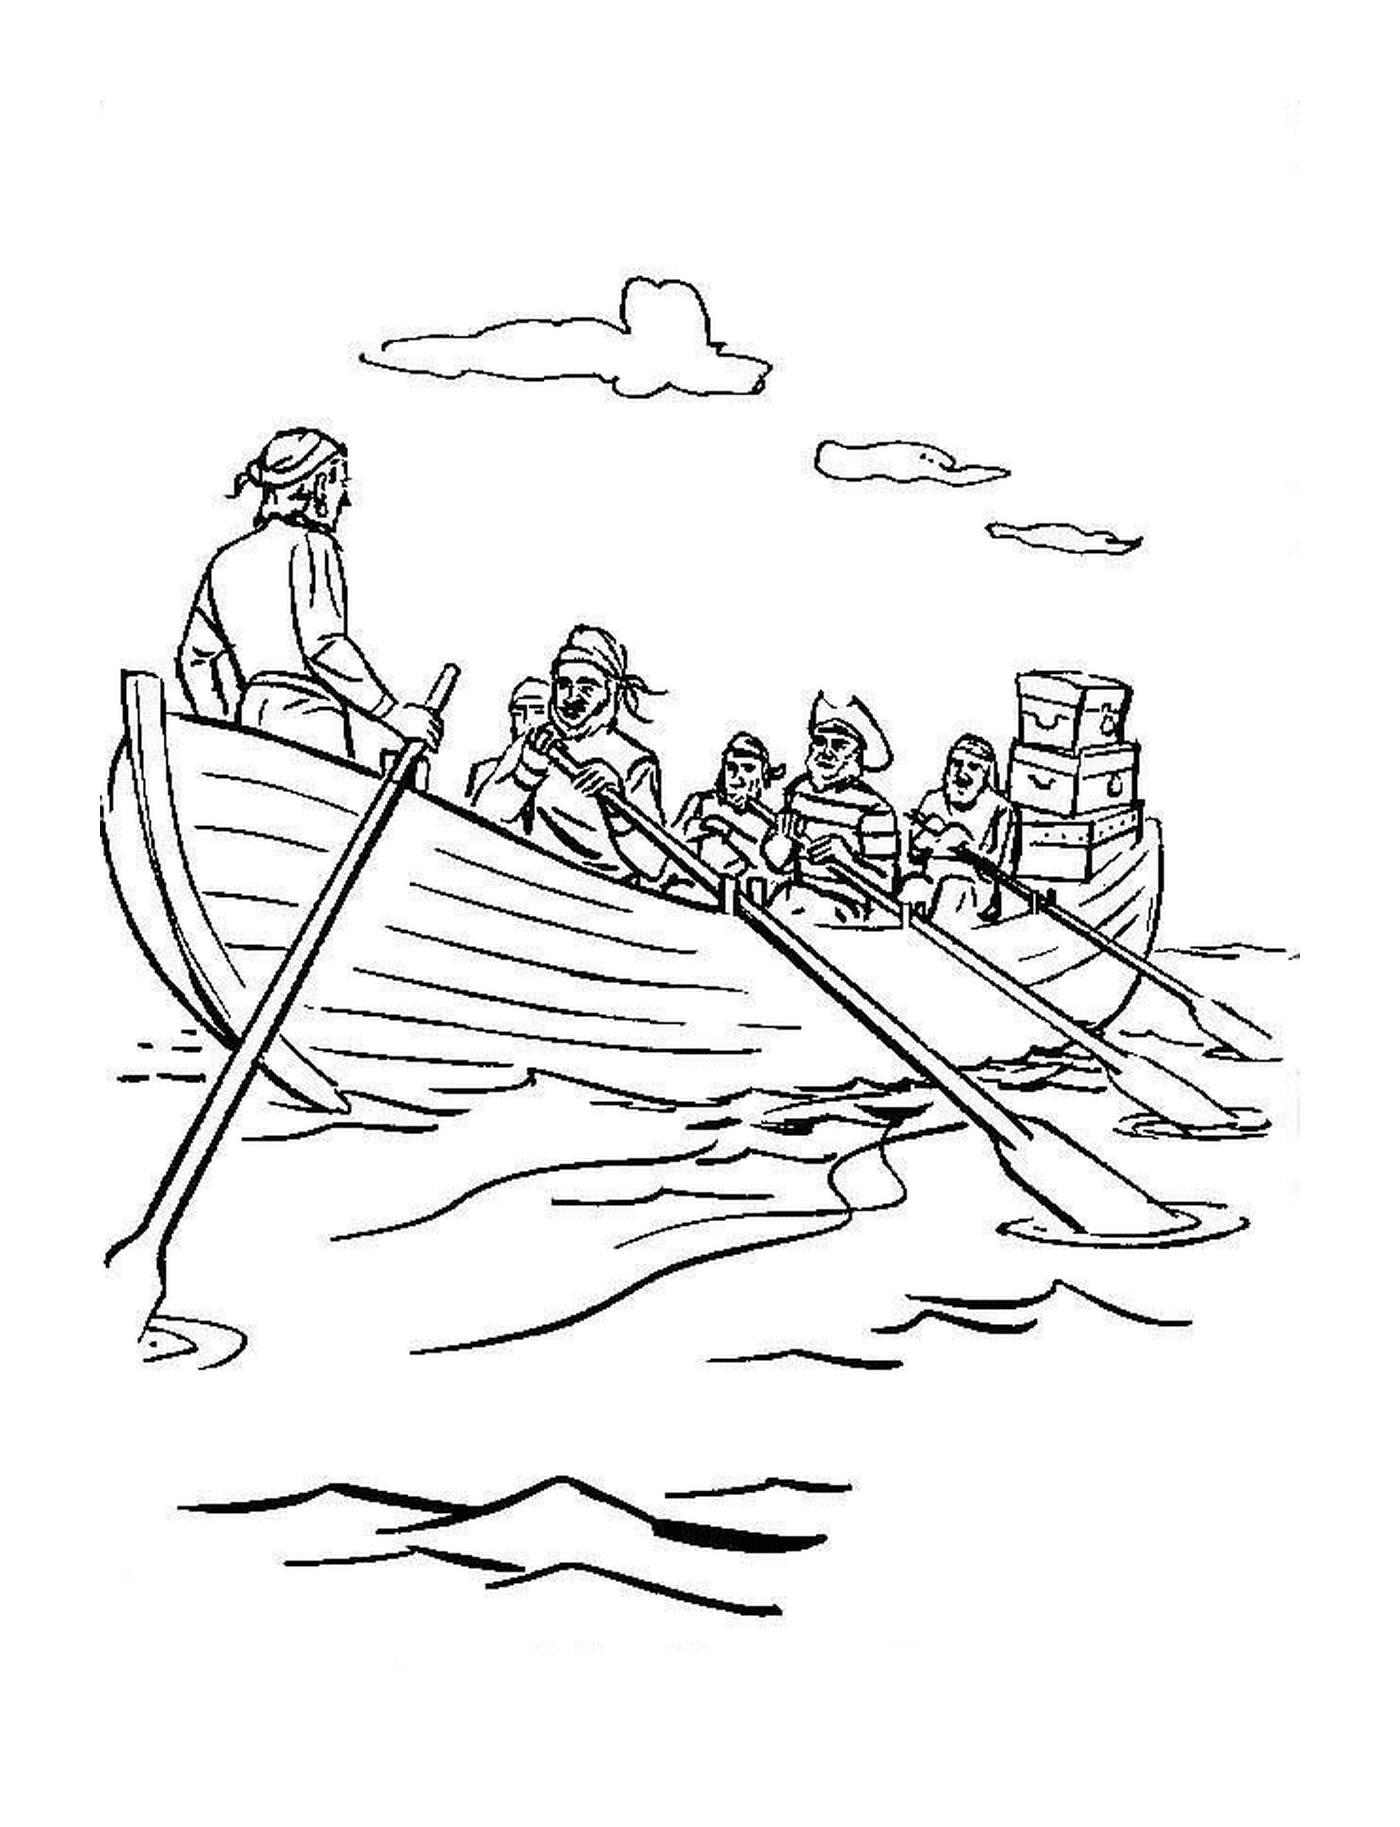  قارب من القراصنة يبحرون على الماء 